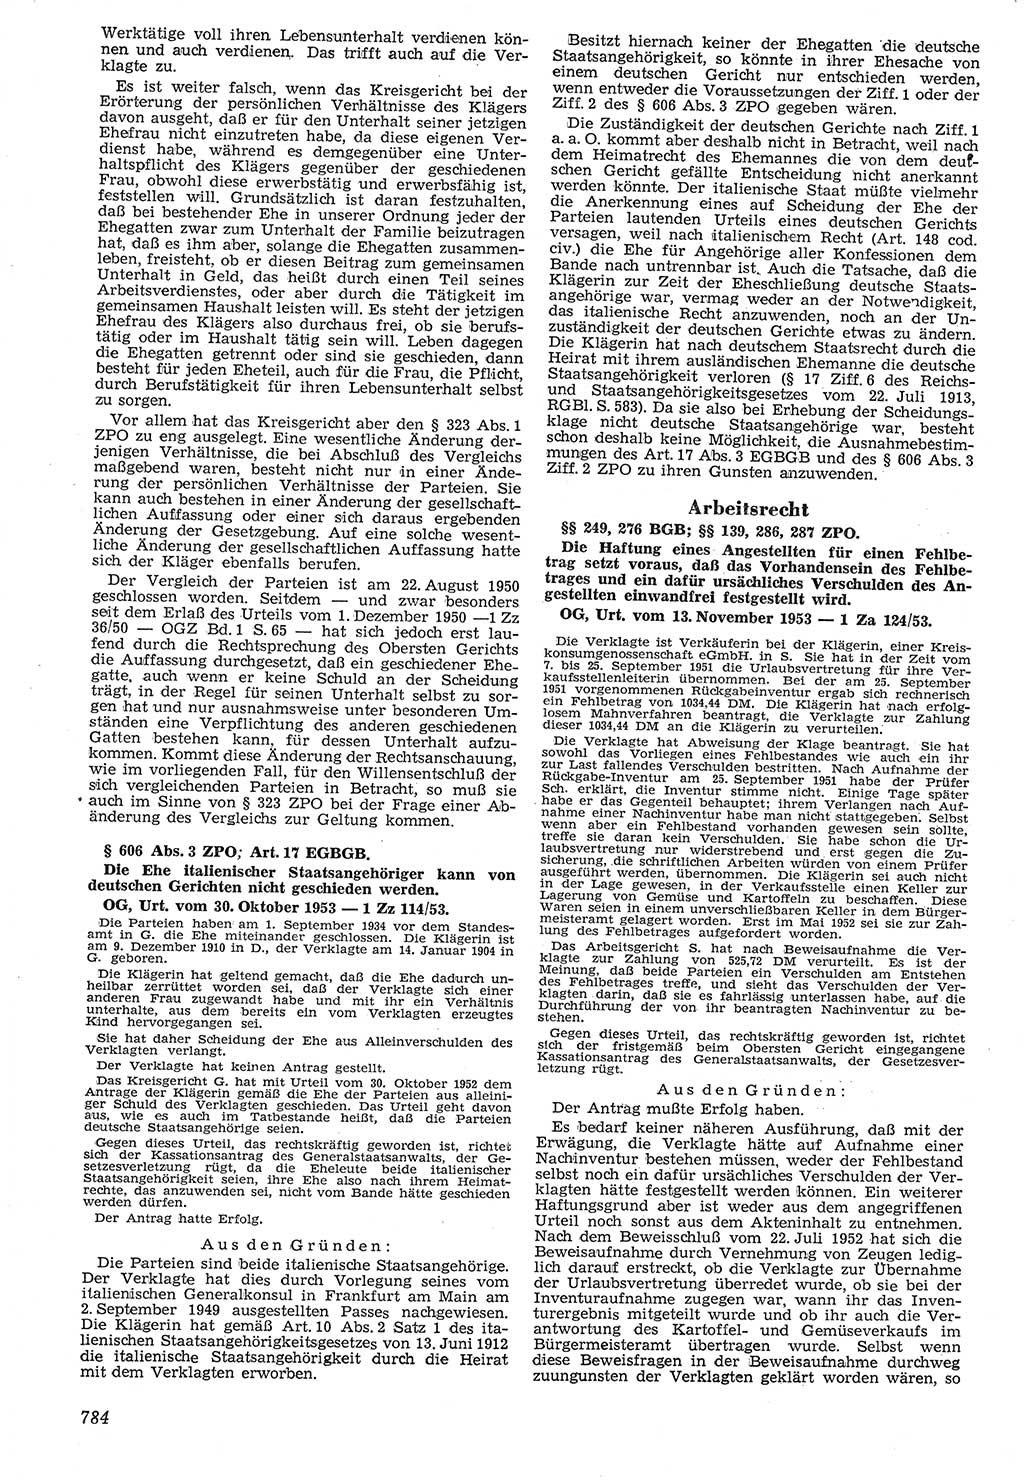 Neue Justiz (NJ), Zeitschrift für Recht und Rechtswissenschaft [Deutsche Demokratische Republik (DDR)], 7. Jahrgang 1953, Seite 784 (NJ DDR 1953, S. 784)